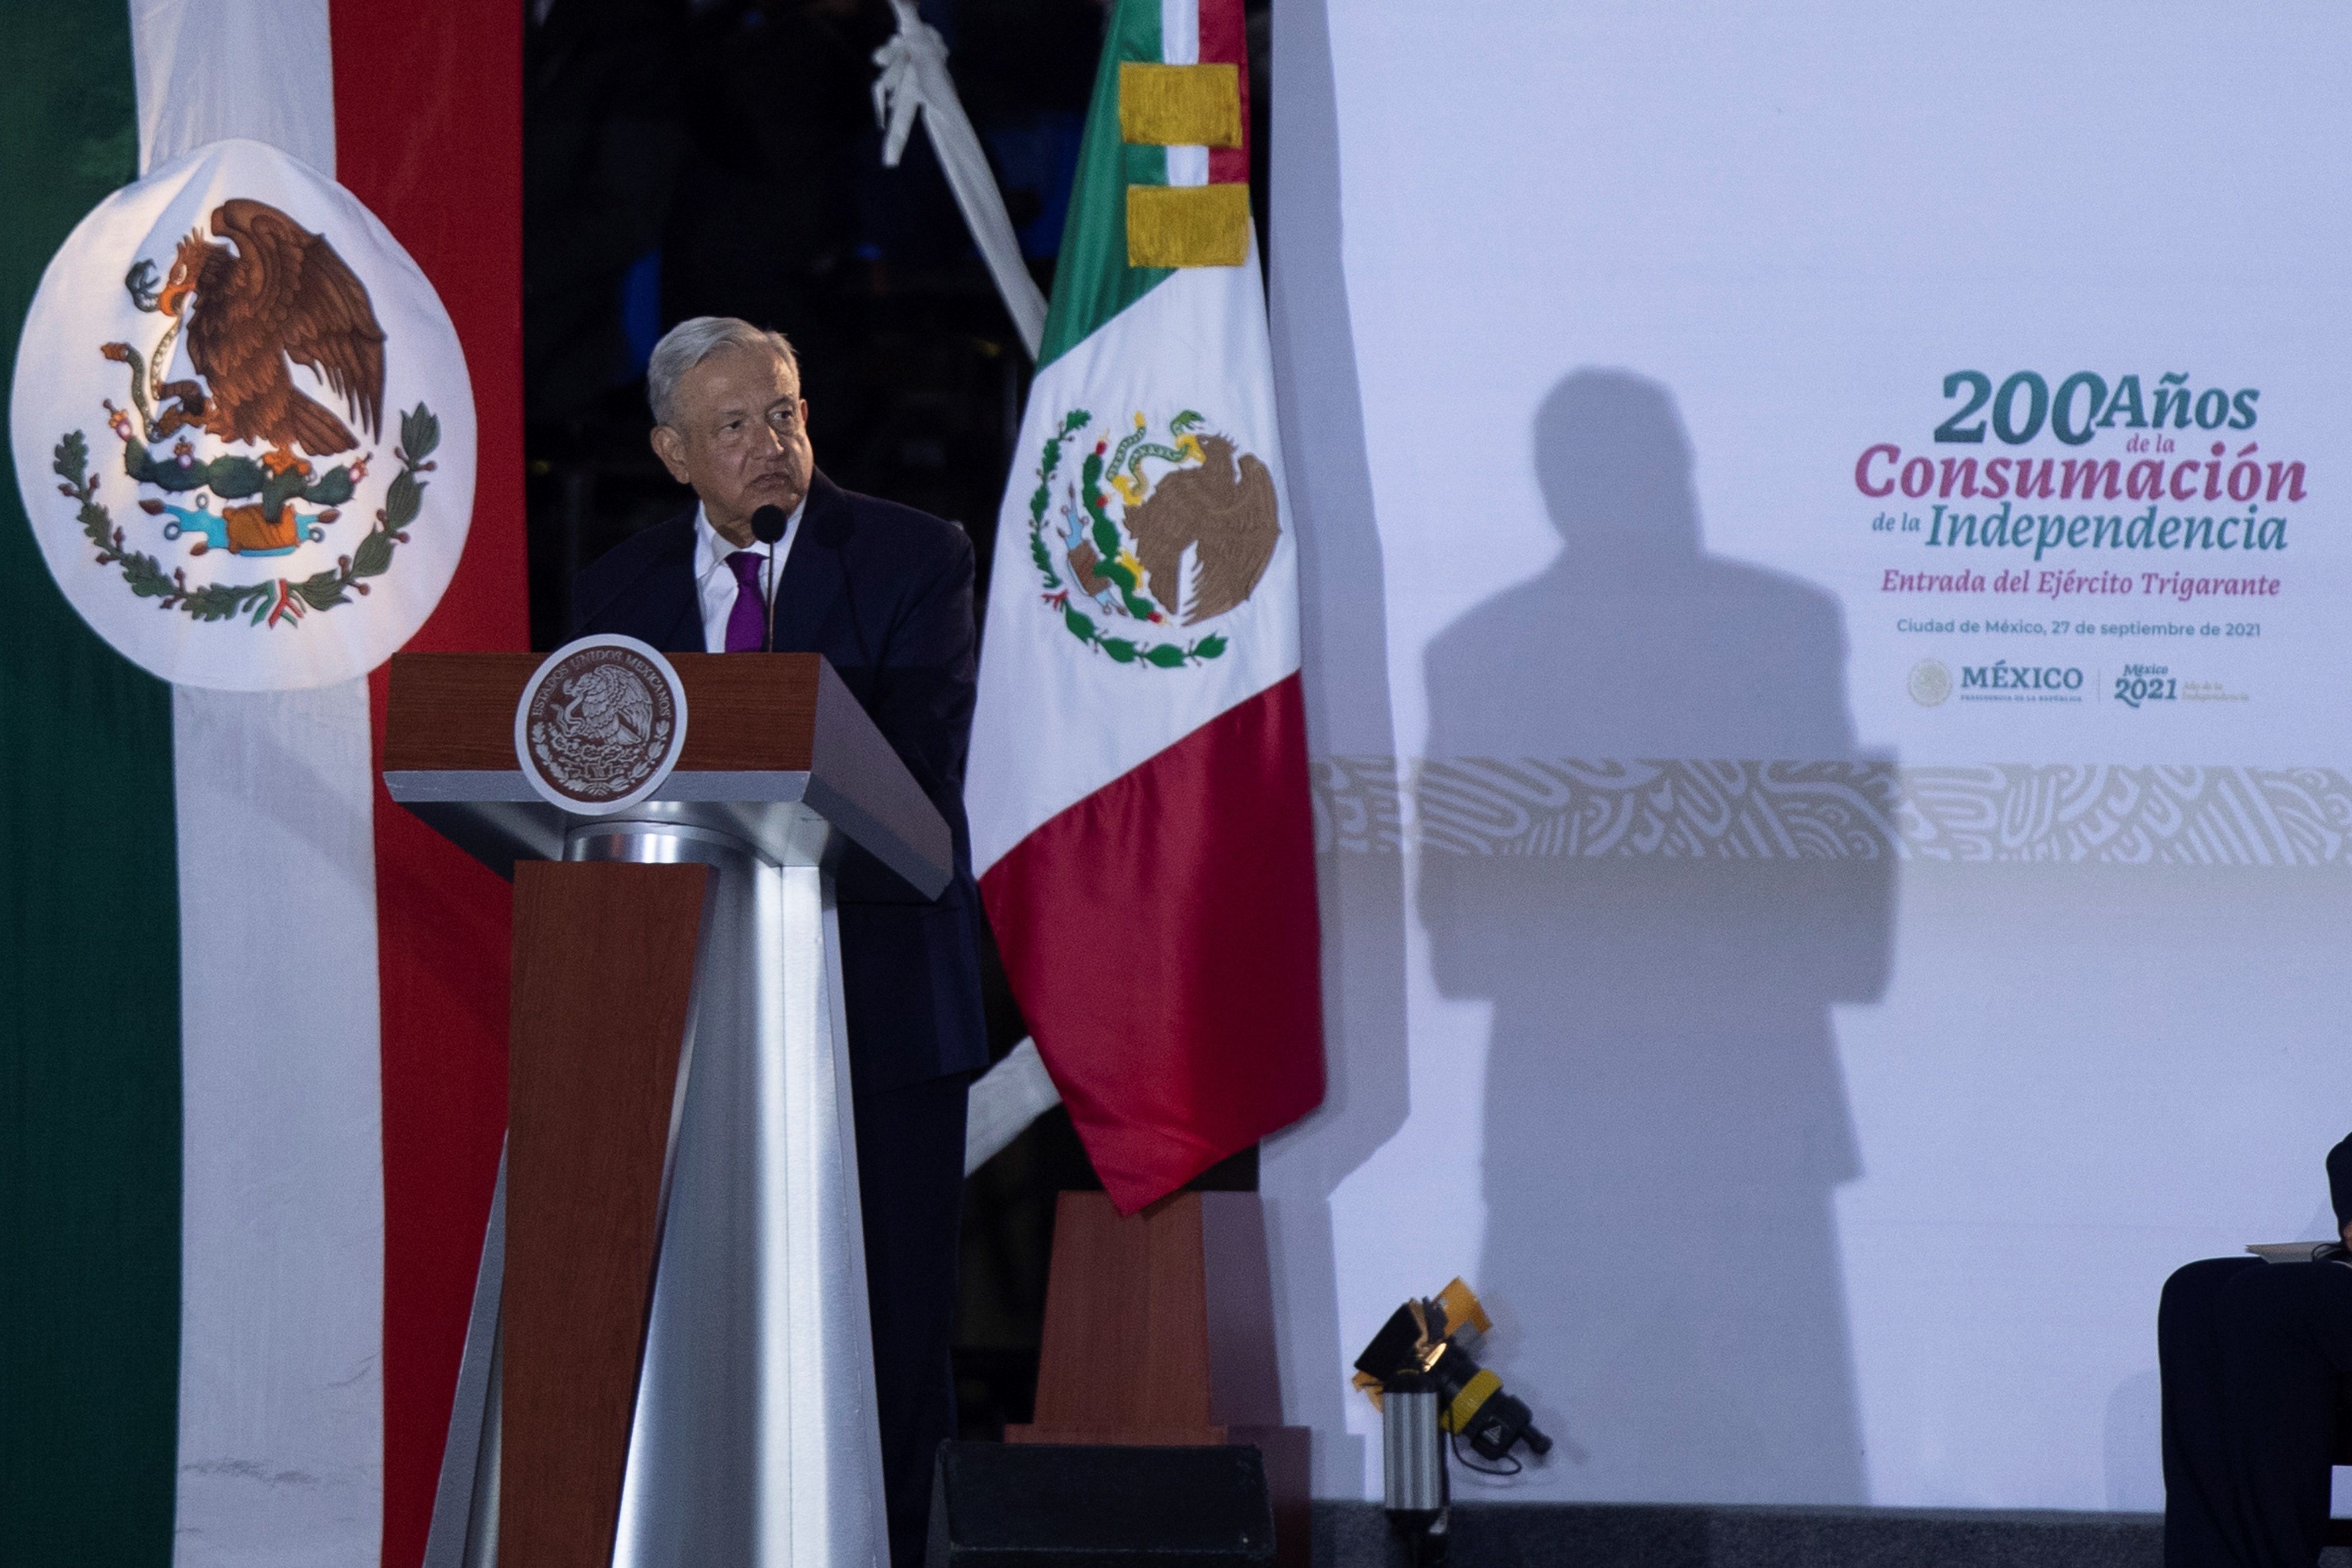 El presidente de México Andrés Manuel López Obrador (c) en la ceremonia del 200 aniversario de la consumación de independencia de México, EFE/Carlos Ramírez 